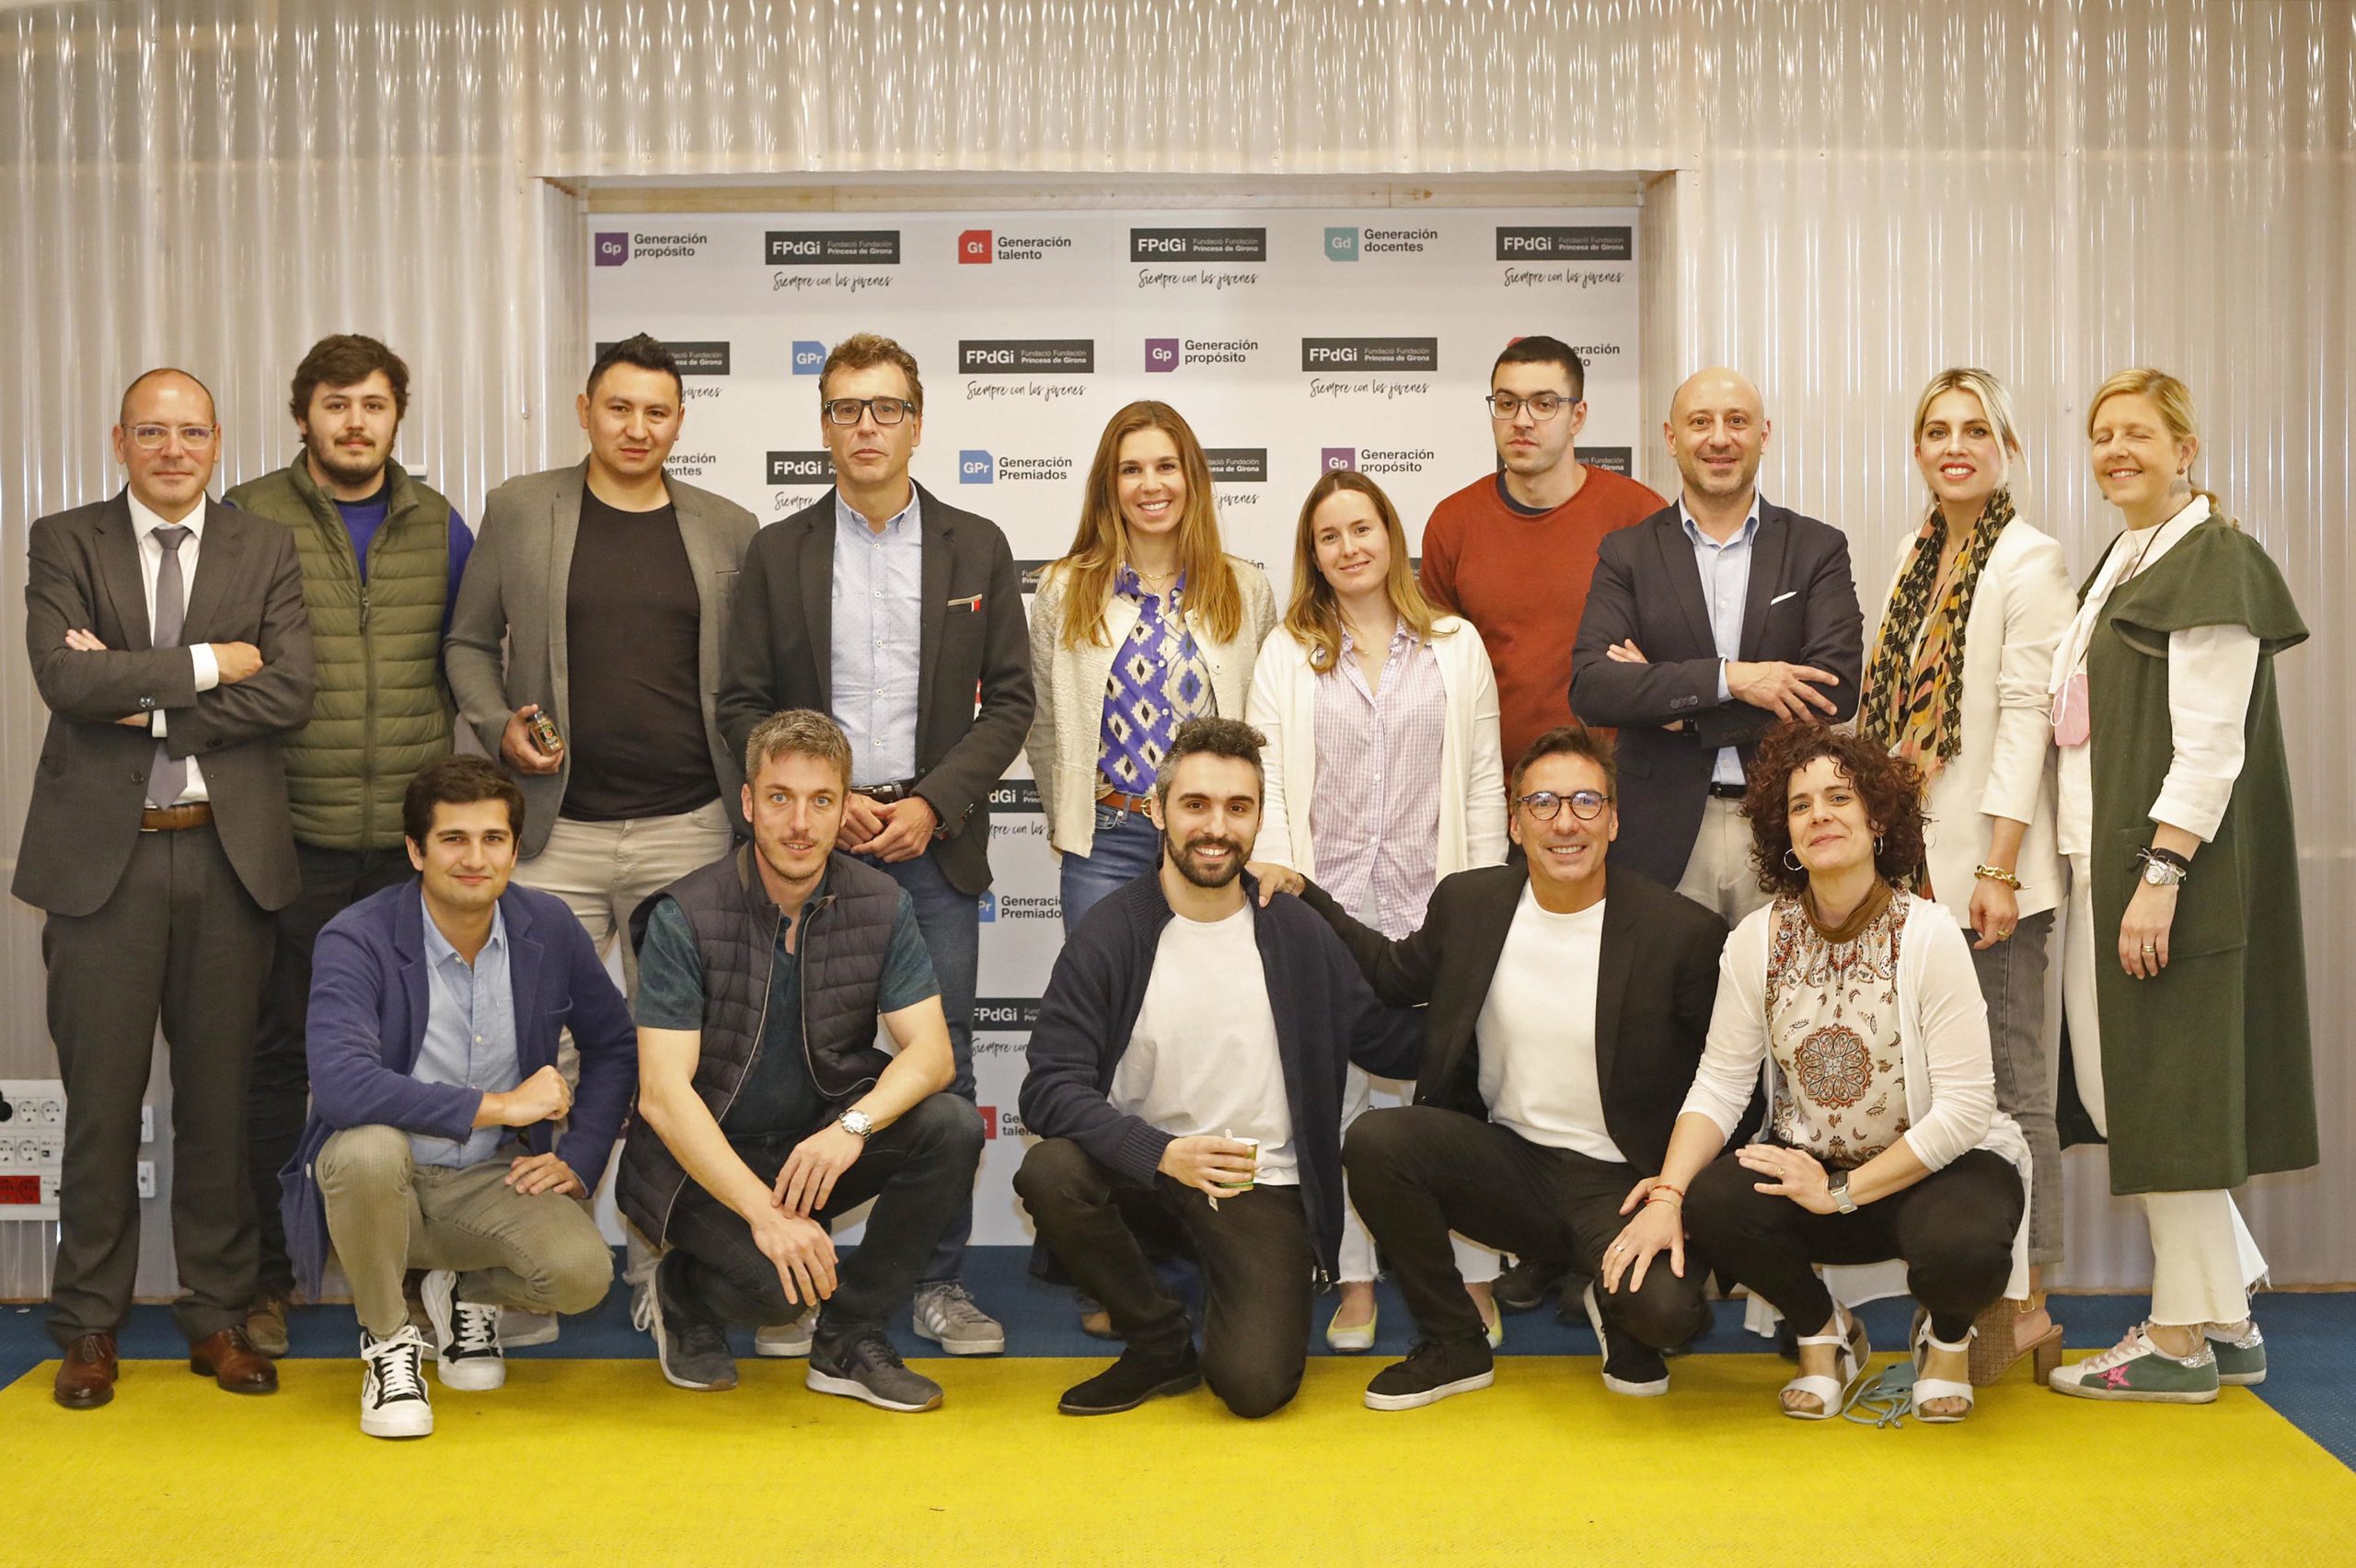 Comença el Tour del Talent a Girona amb un repte: convertir la ciutat en un hub de talent internacional